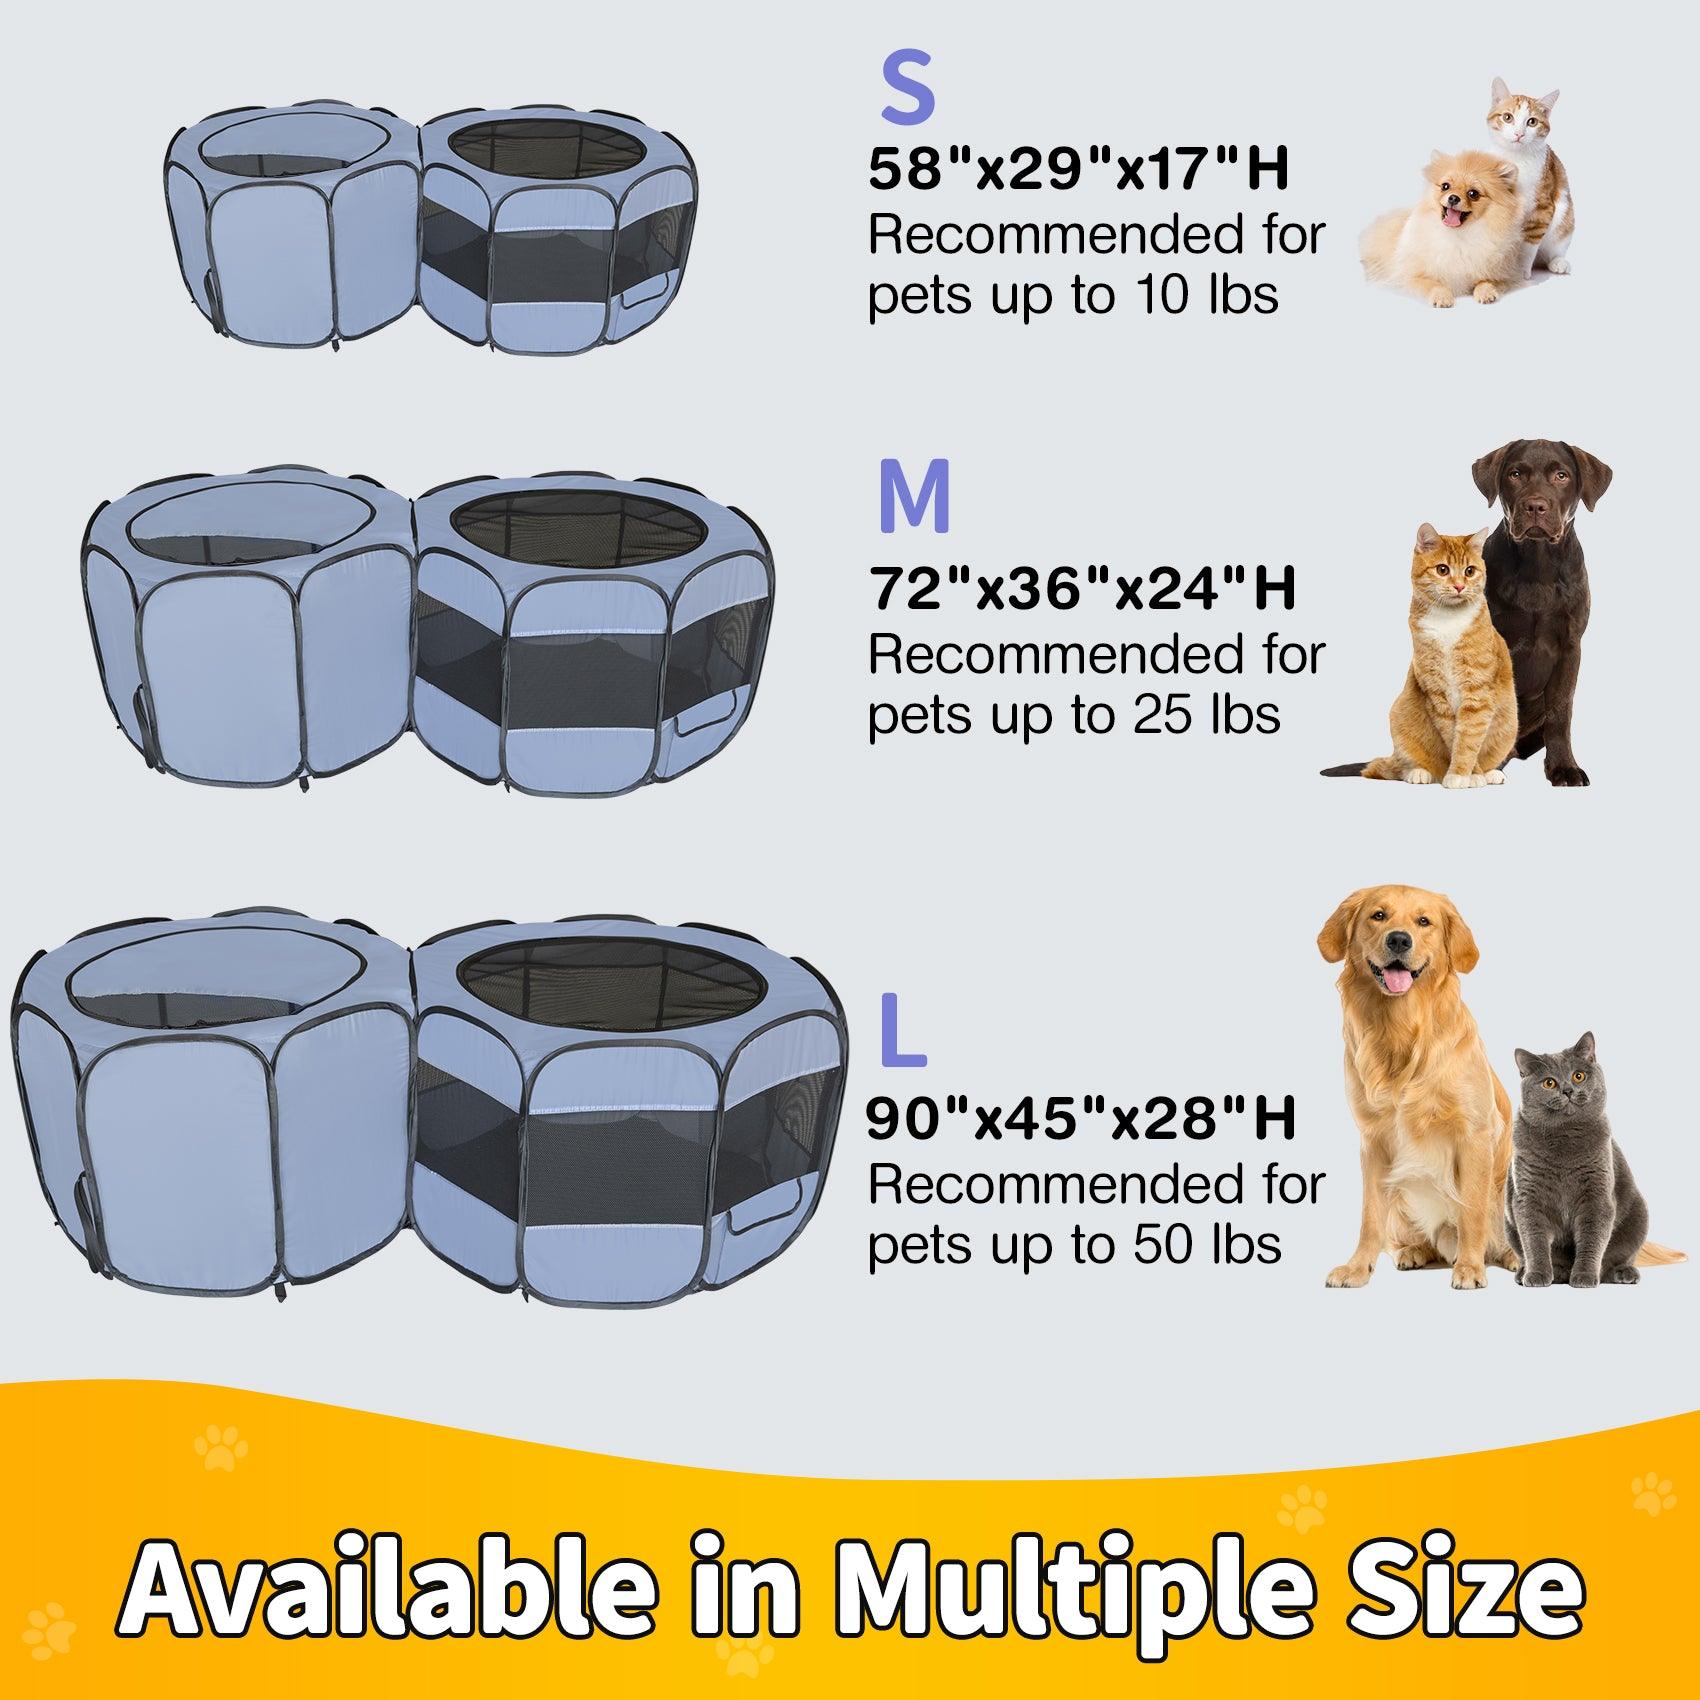 EighteenTek Double Room Pet Playpen available in 3 sizes neet different needs